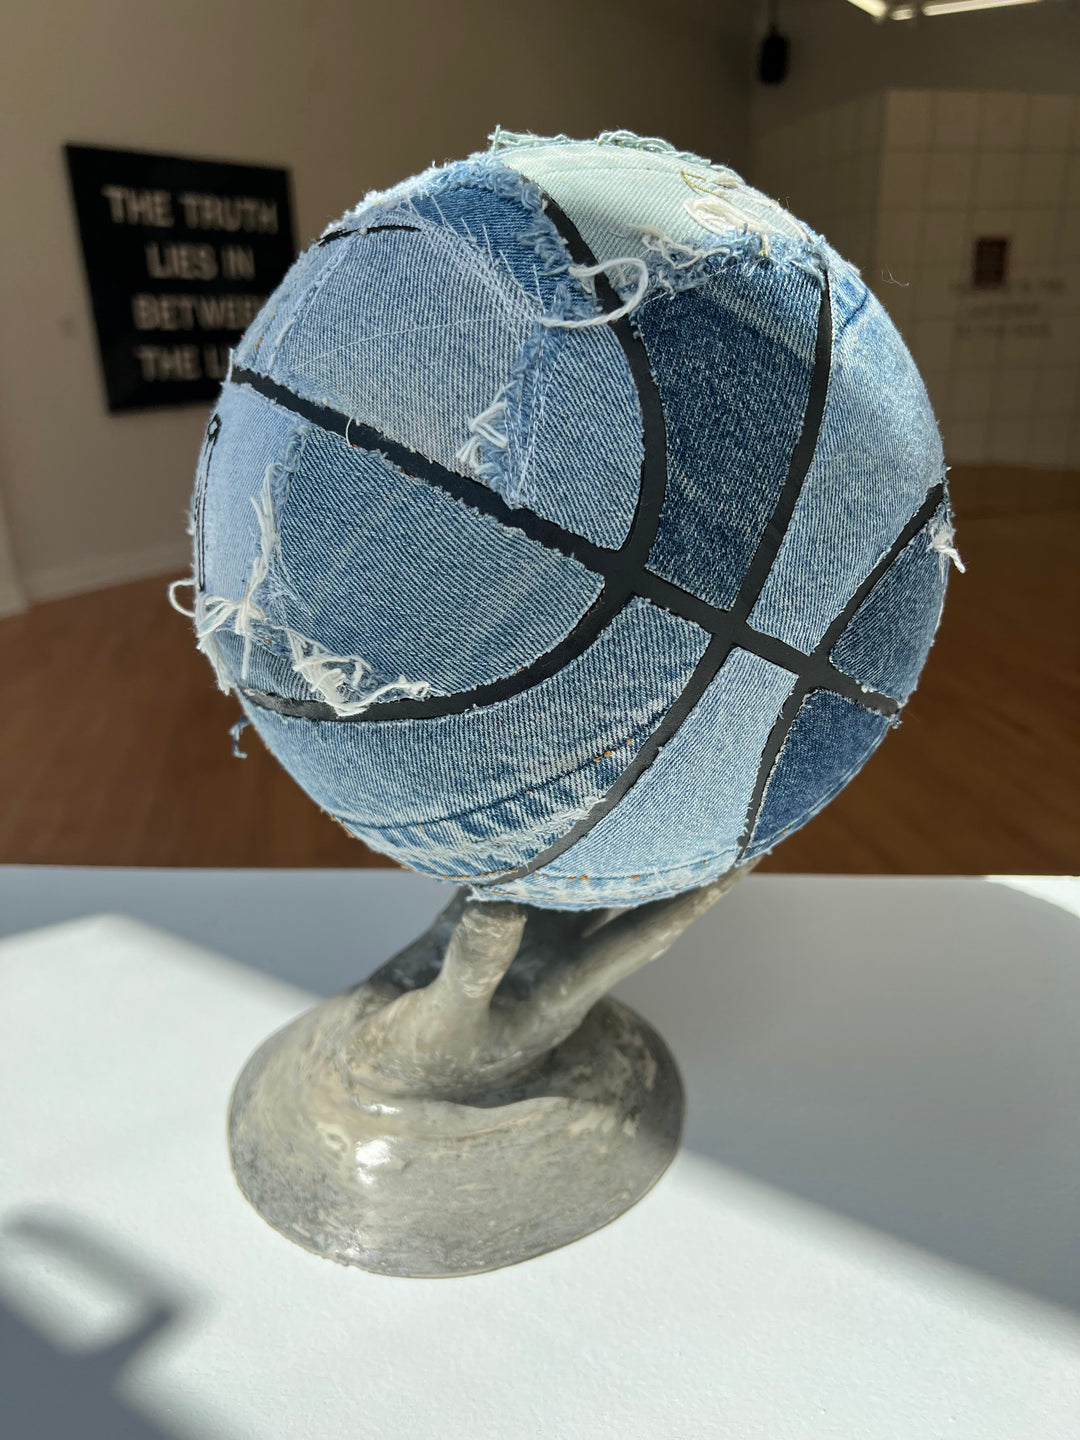 Boro Ball: Sculpture